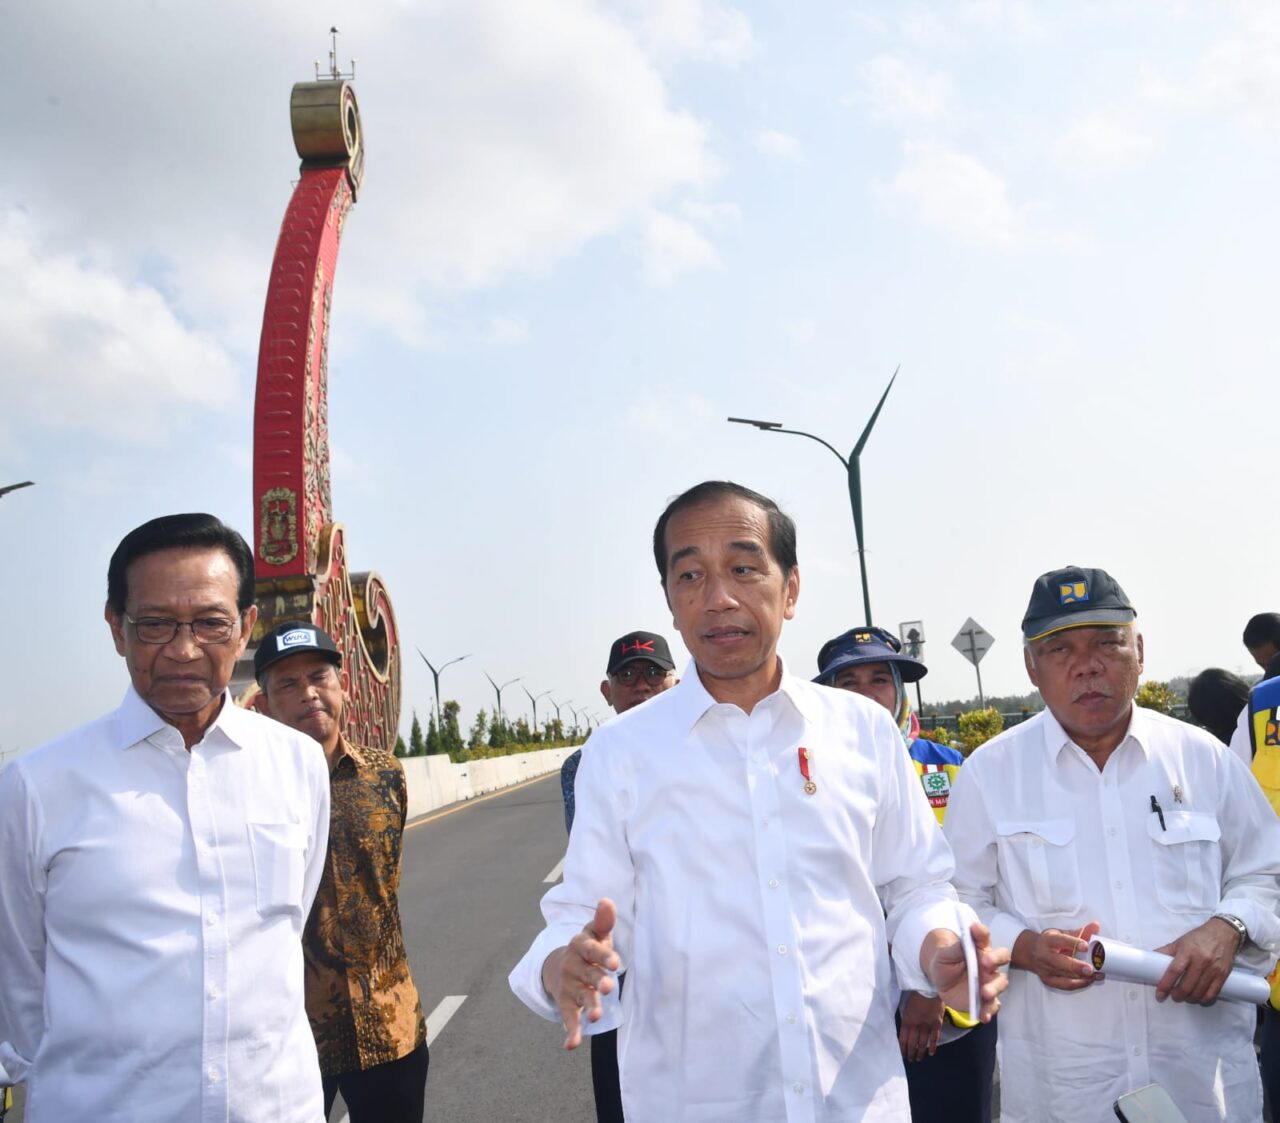 Presiden Jokowi Resmikan Jembatan Kretek 2 Bantul Yogyakarta